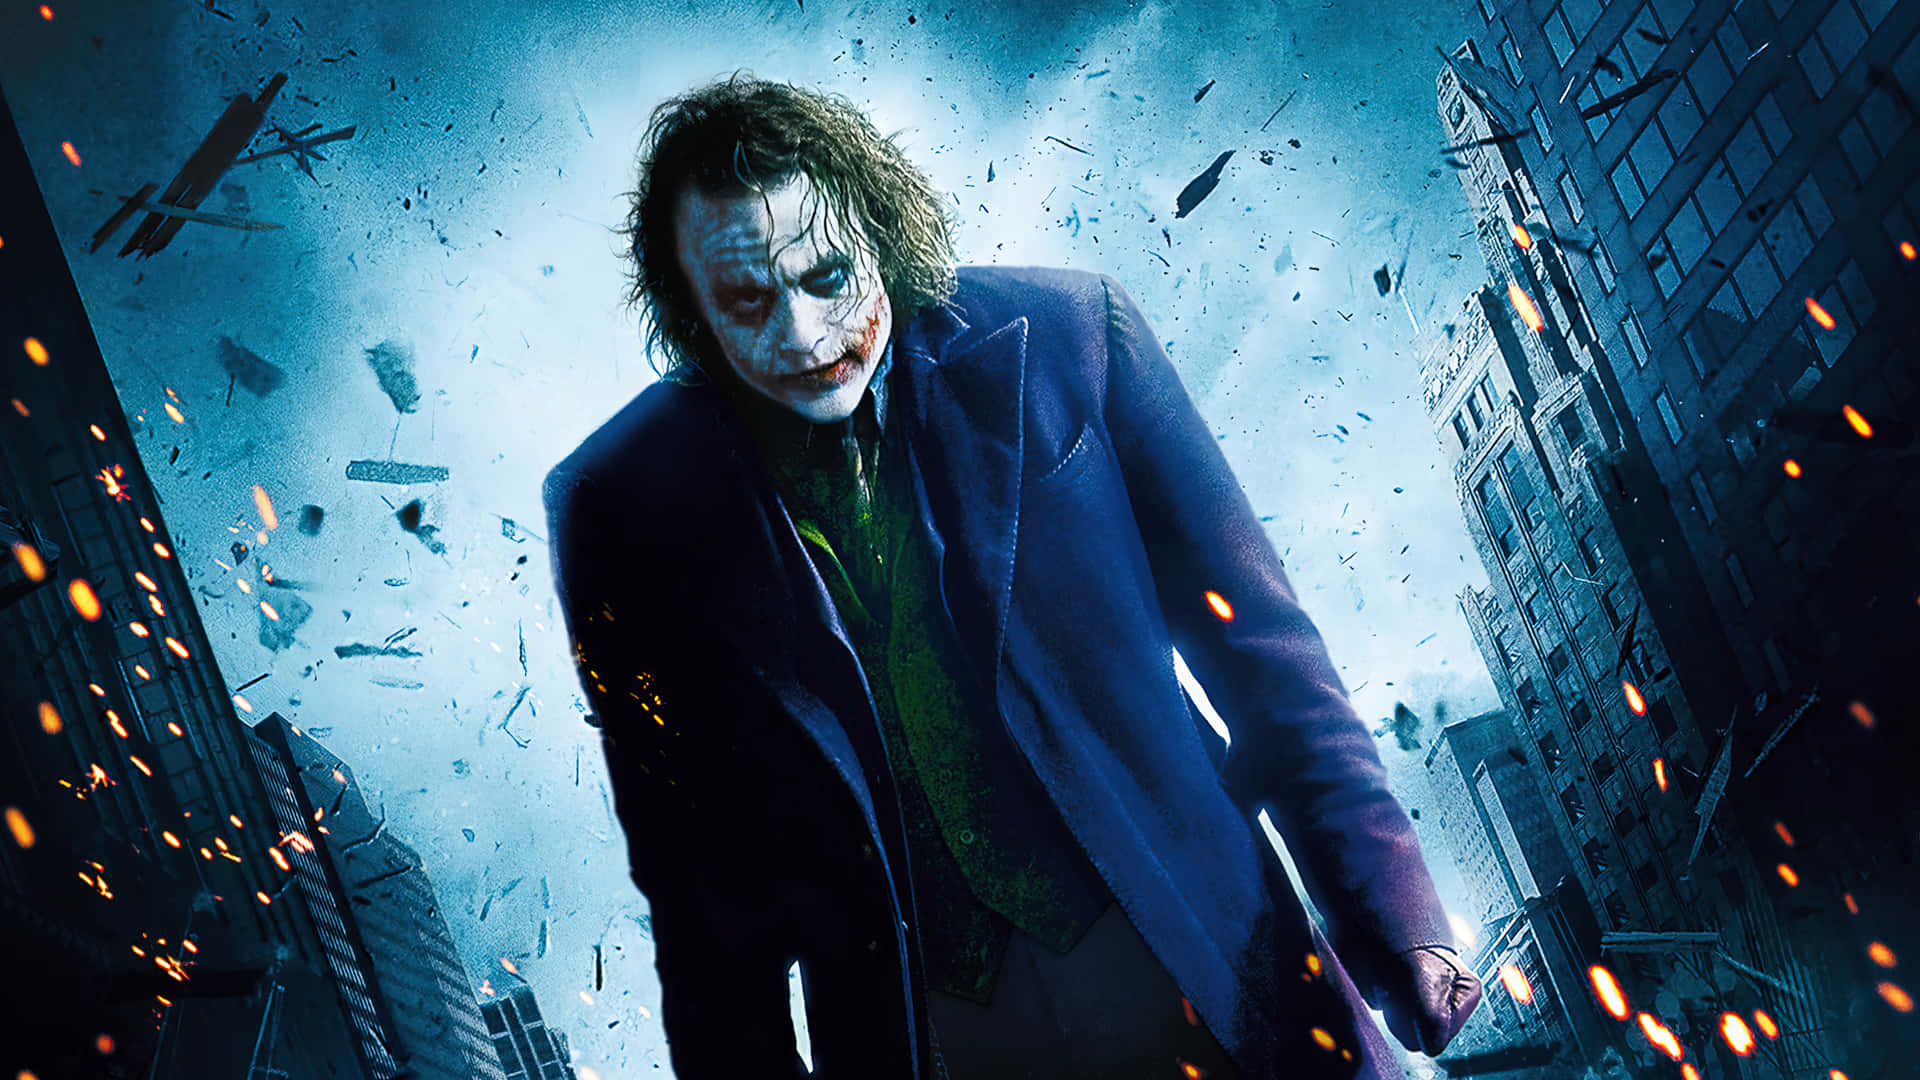 Dark Knight Joker In 4k Ultra Hd Movie Poster Wallpaper